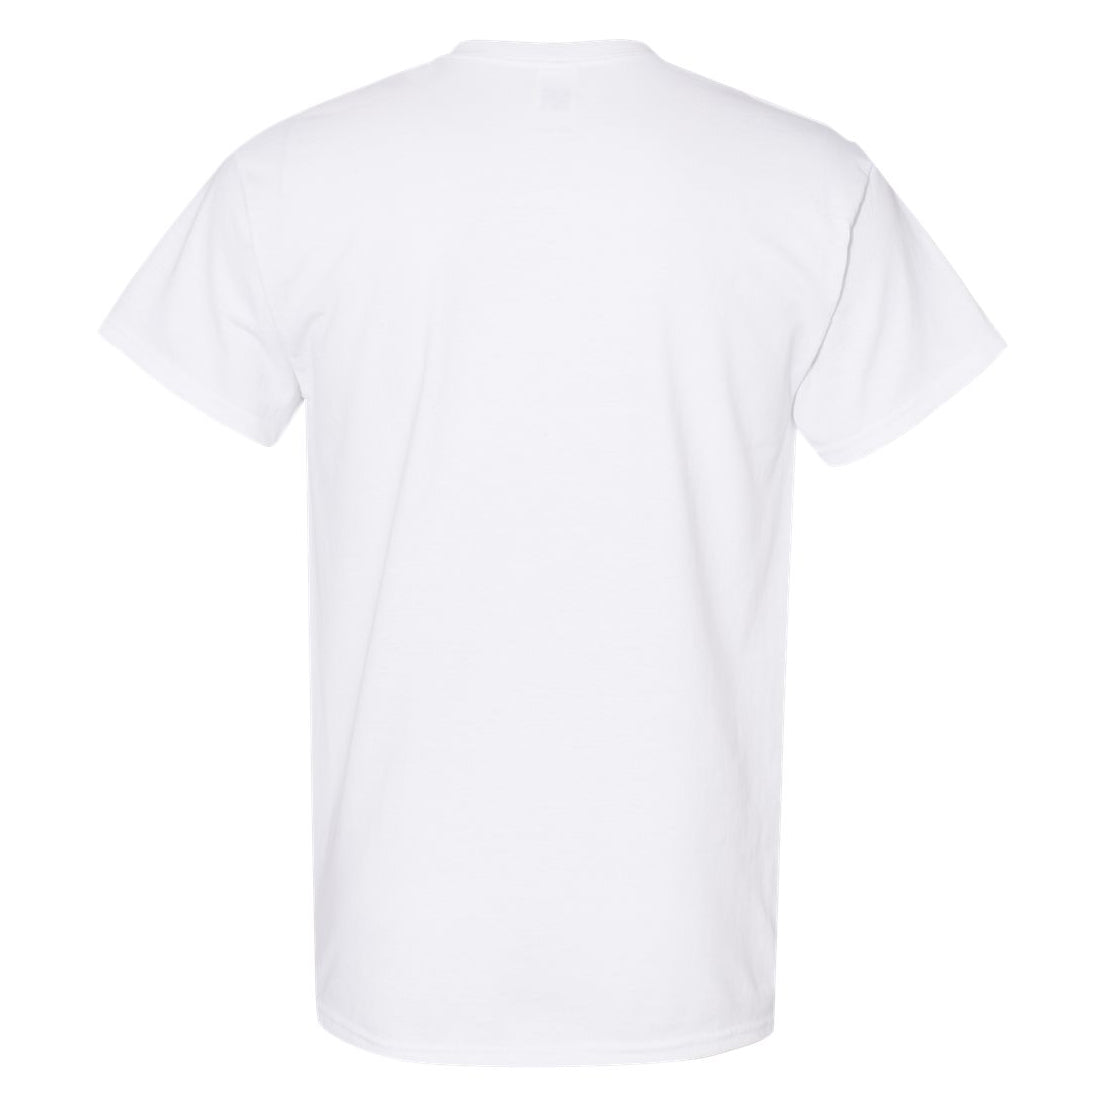 Flat Rock Rams T-Shirt | Rams Arched Design